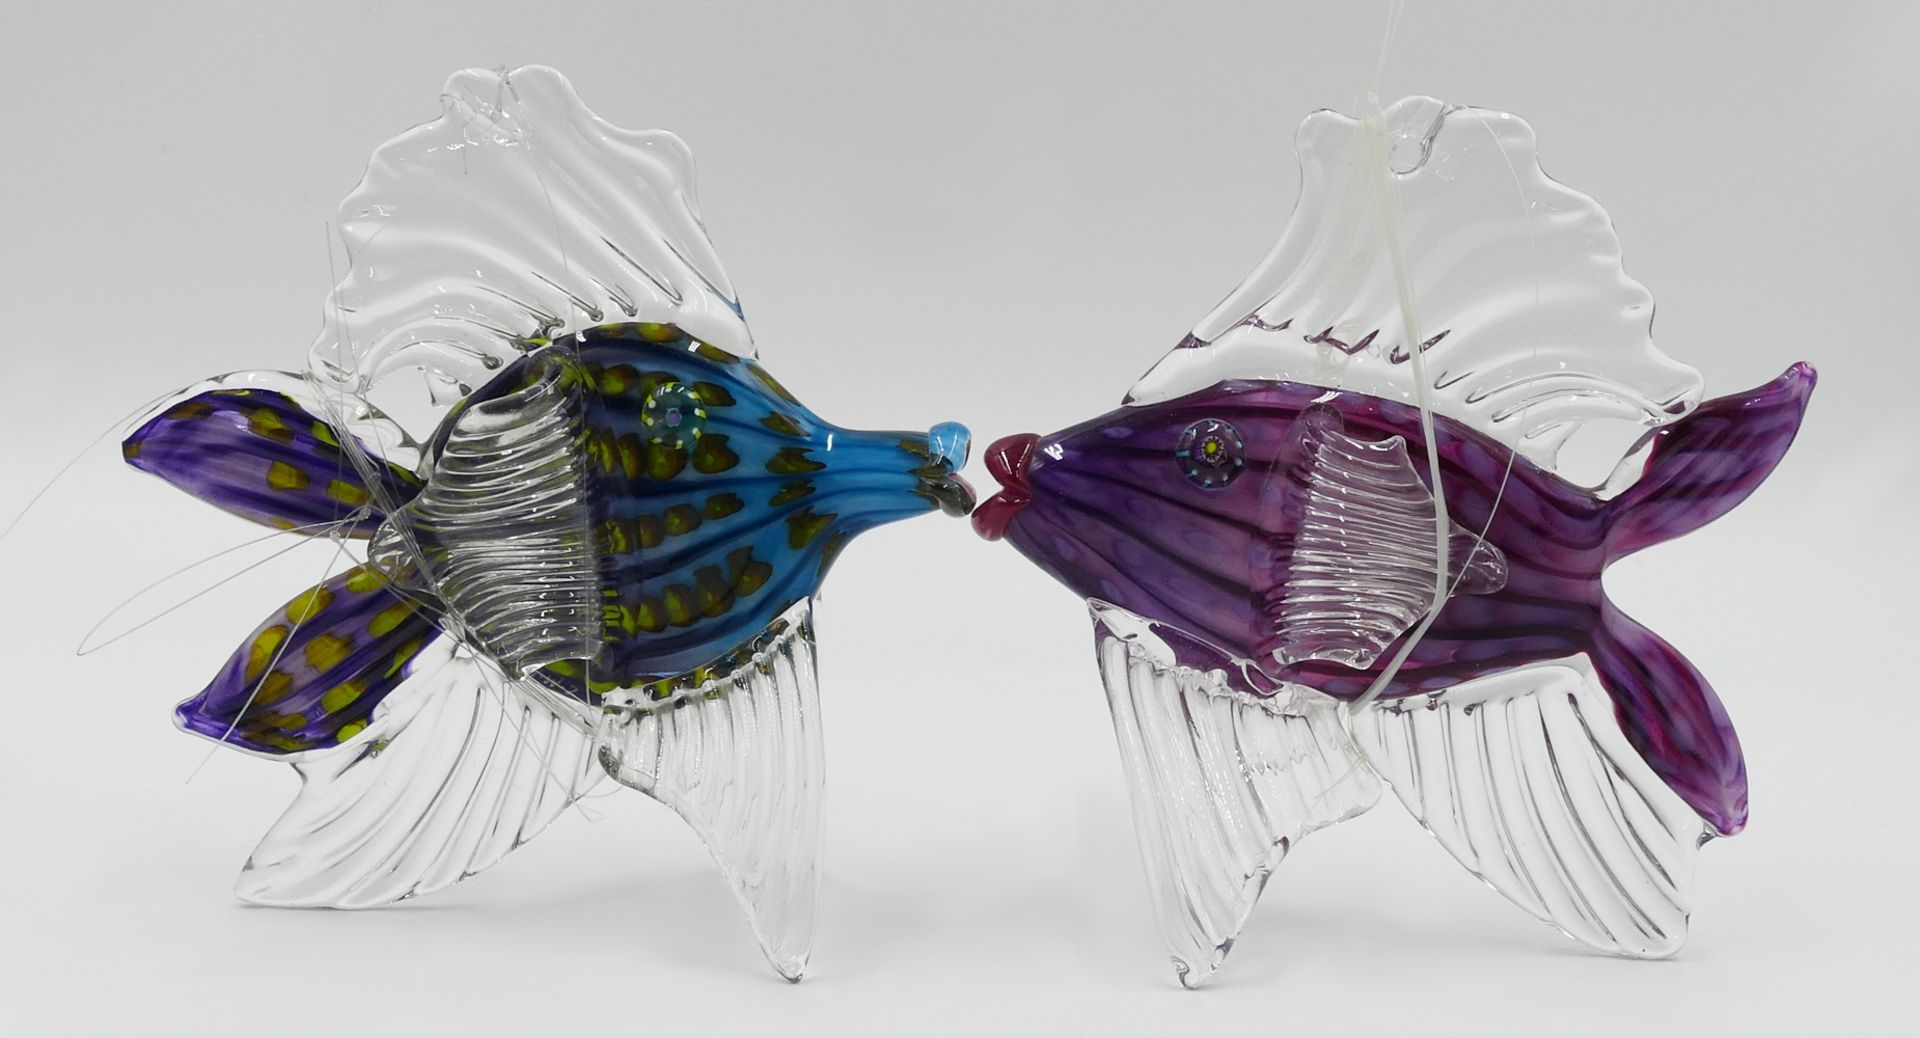 11 Glasobjekte z.T. wohl MURANO: 6 Buntglasfische bis L ca. 32cm sowie 5 dreieckige Glasflaschen tra